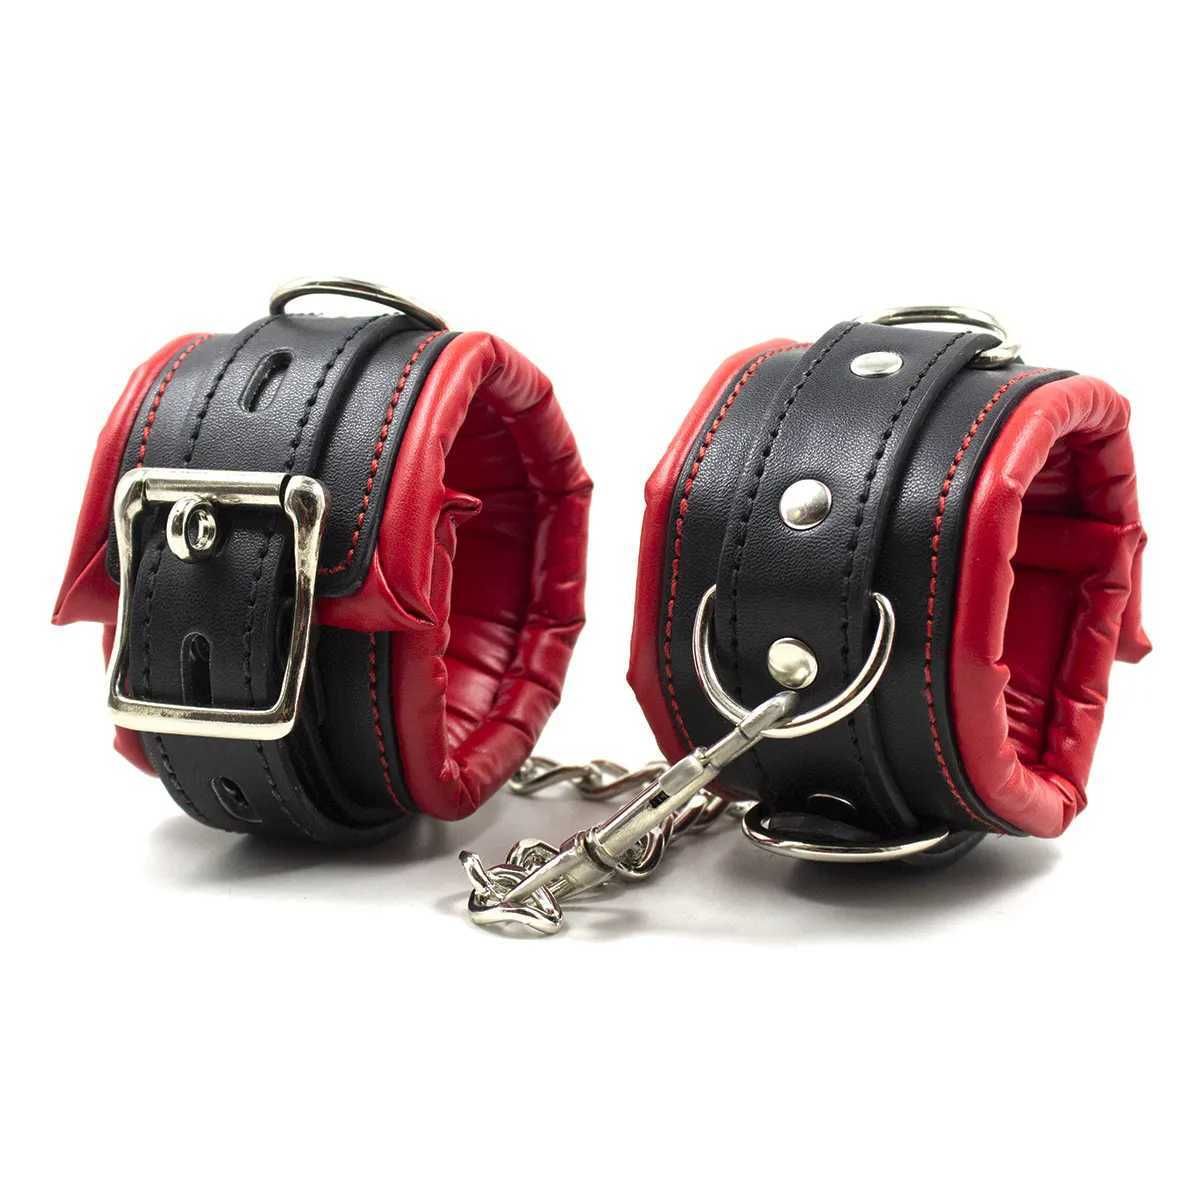 Sm80-handcuffs